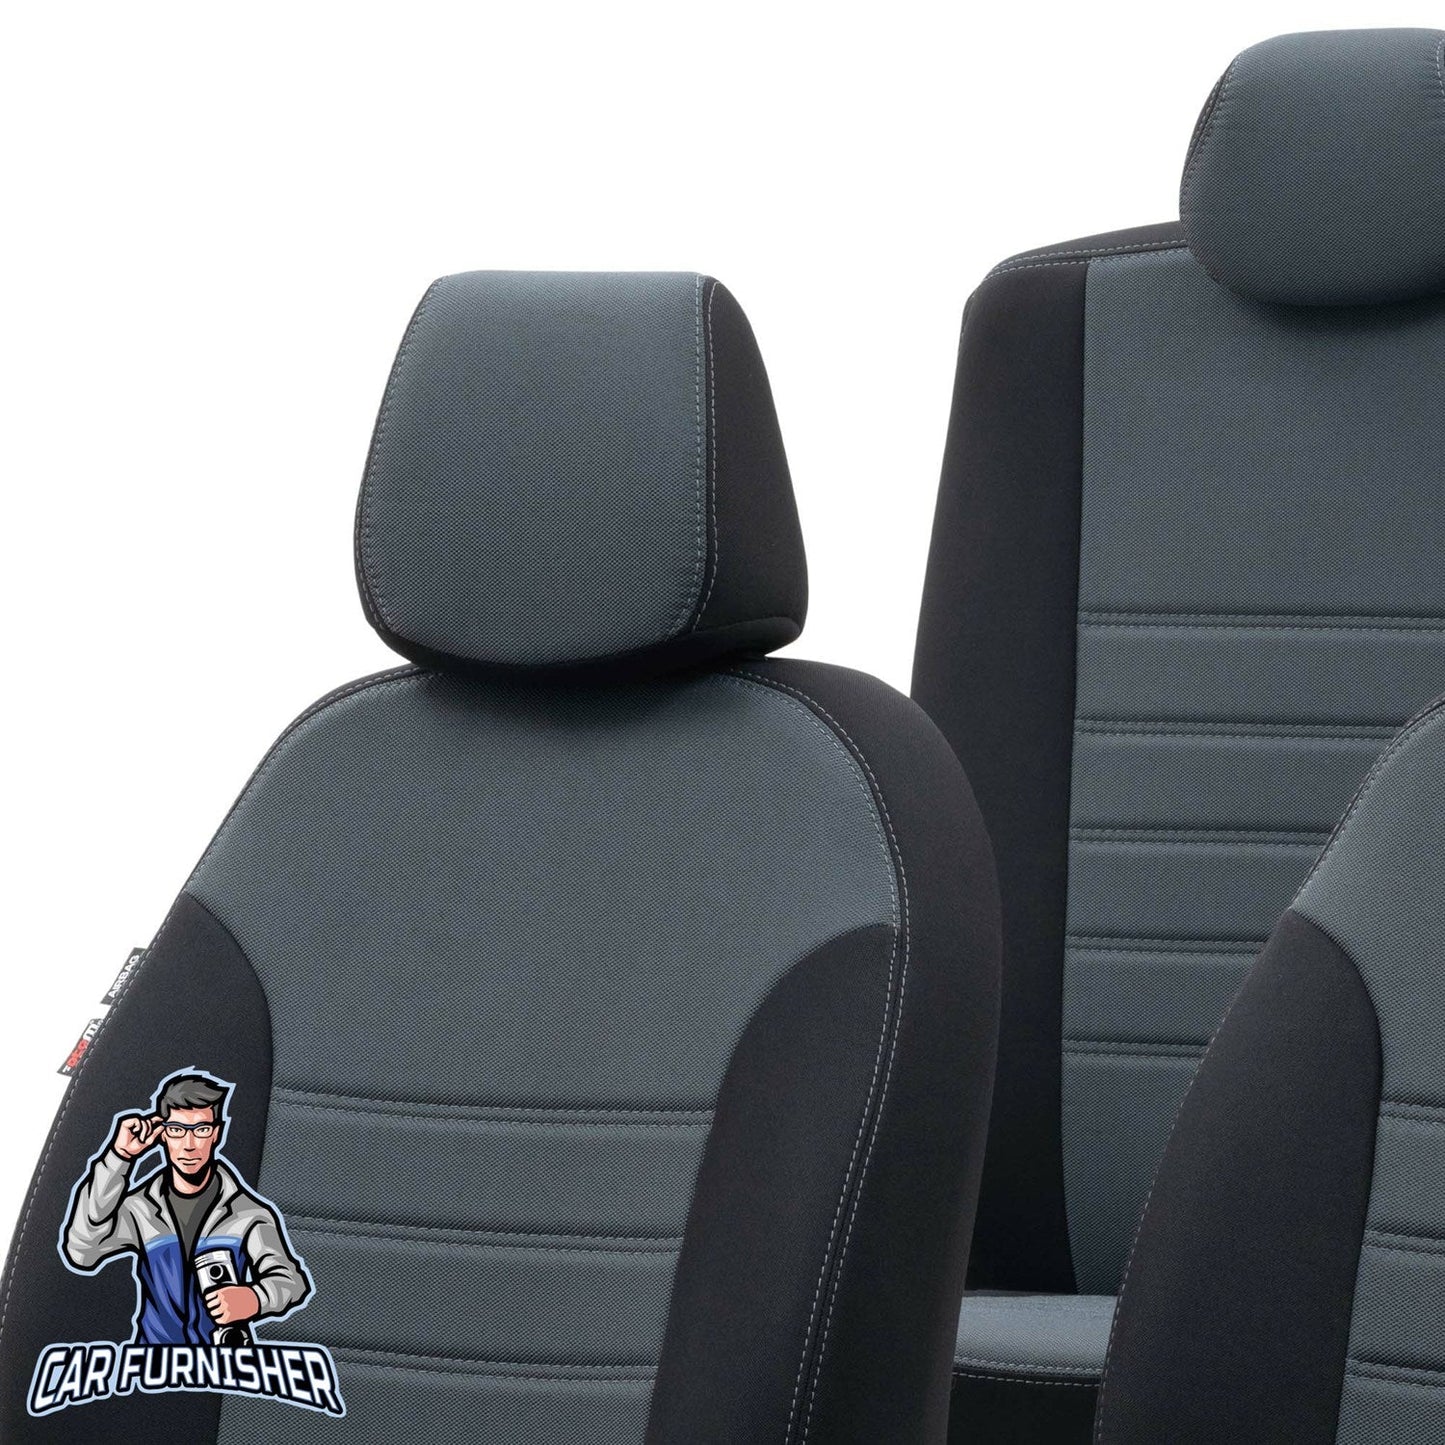 Kia Ceed Seat Covers Original Jacquard Design Smoked Black Jacquard Fabric